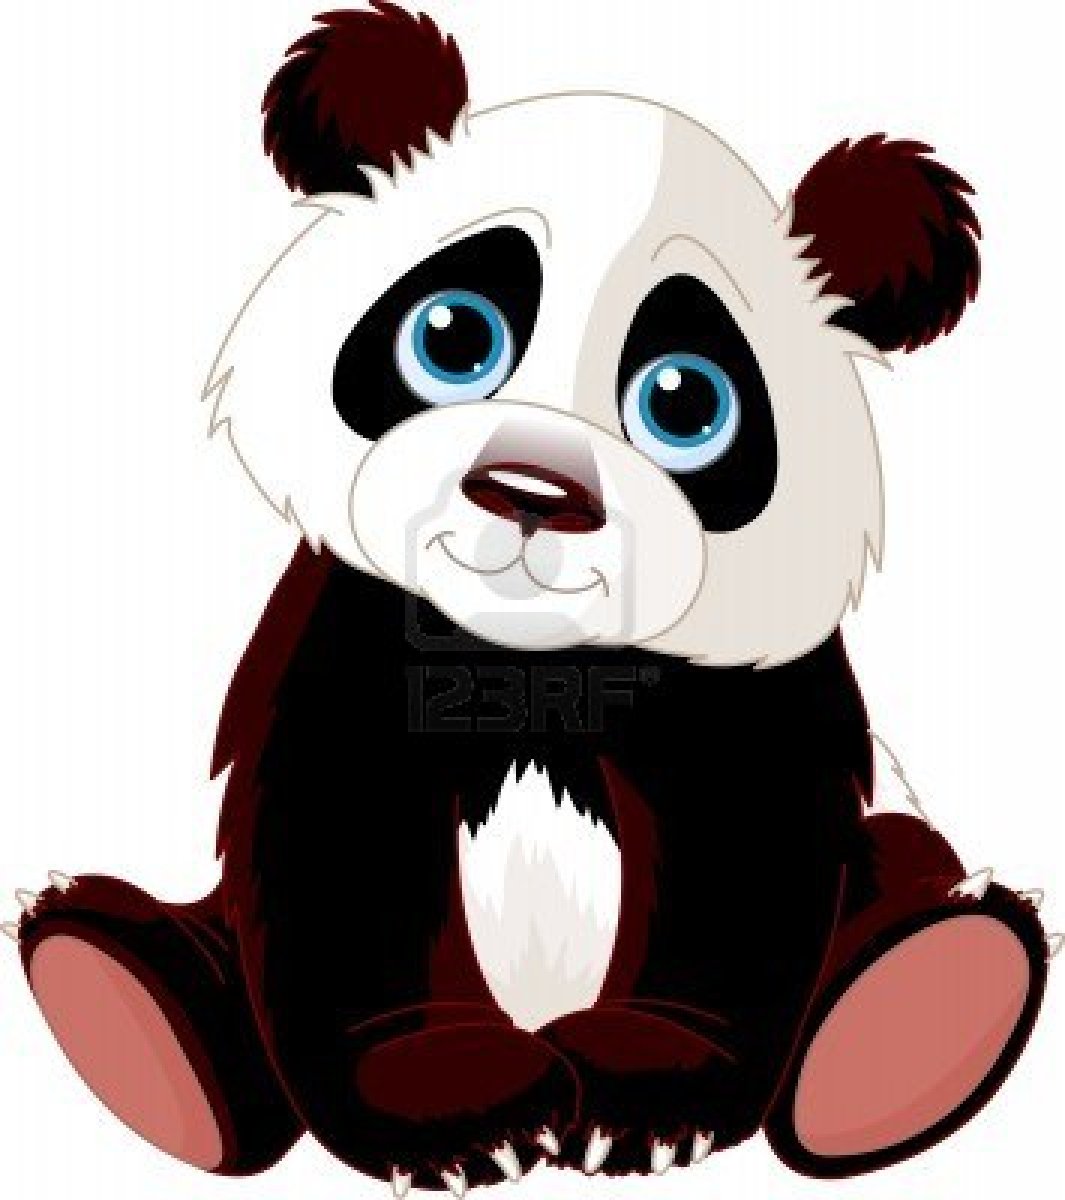 Cute panda clipart clipartion